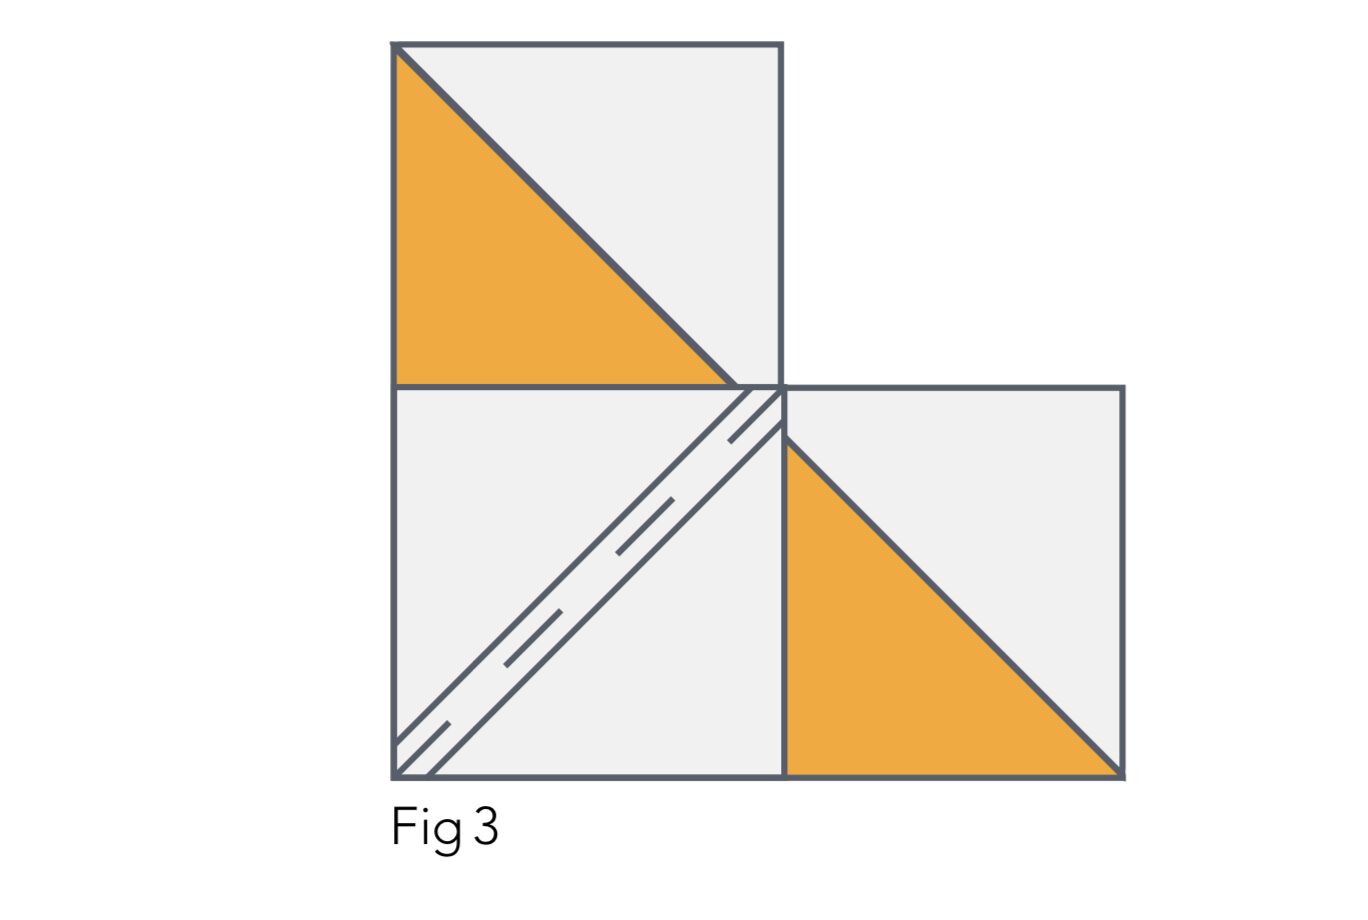 Strip quilt pattern Figure 3